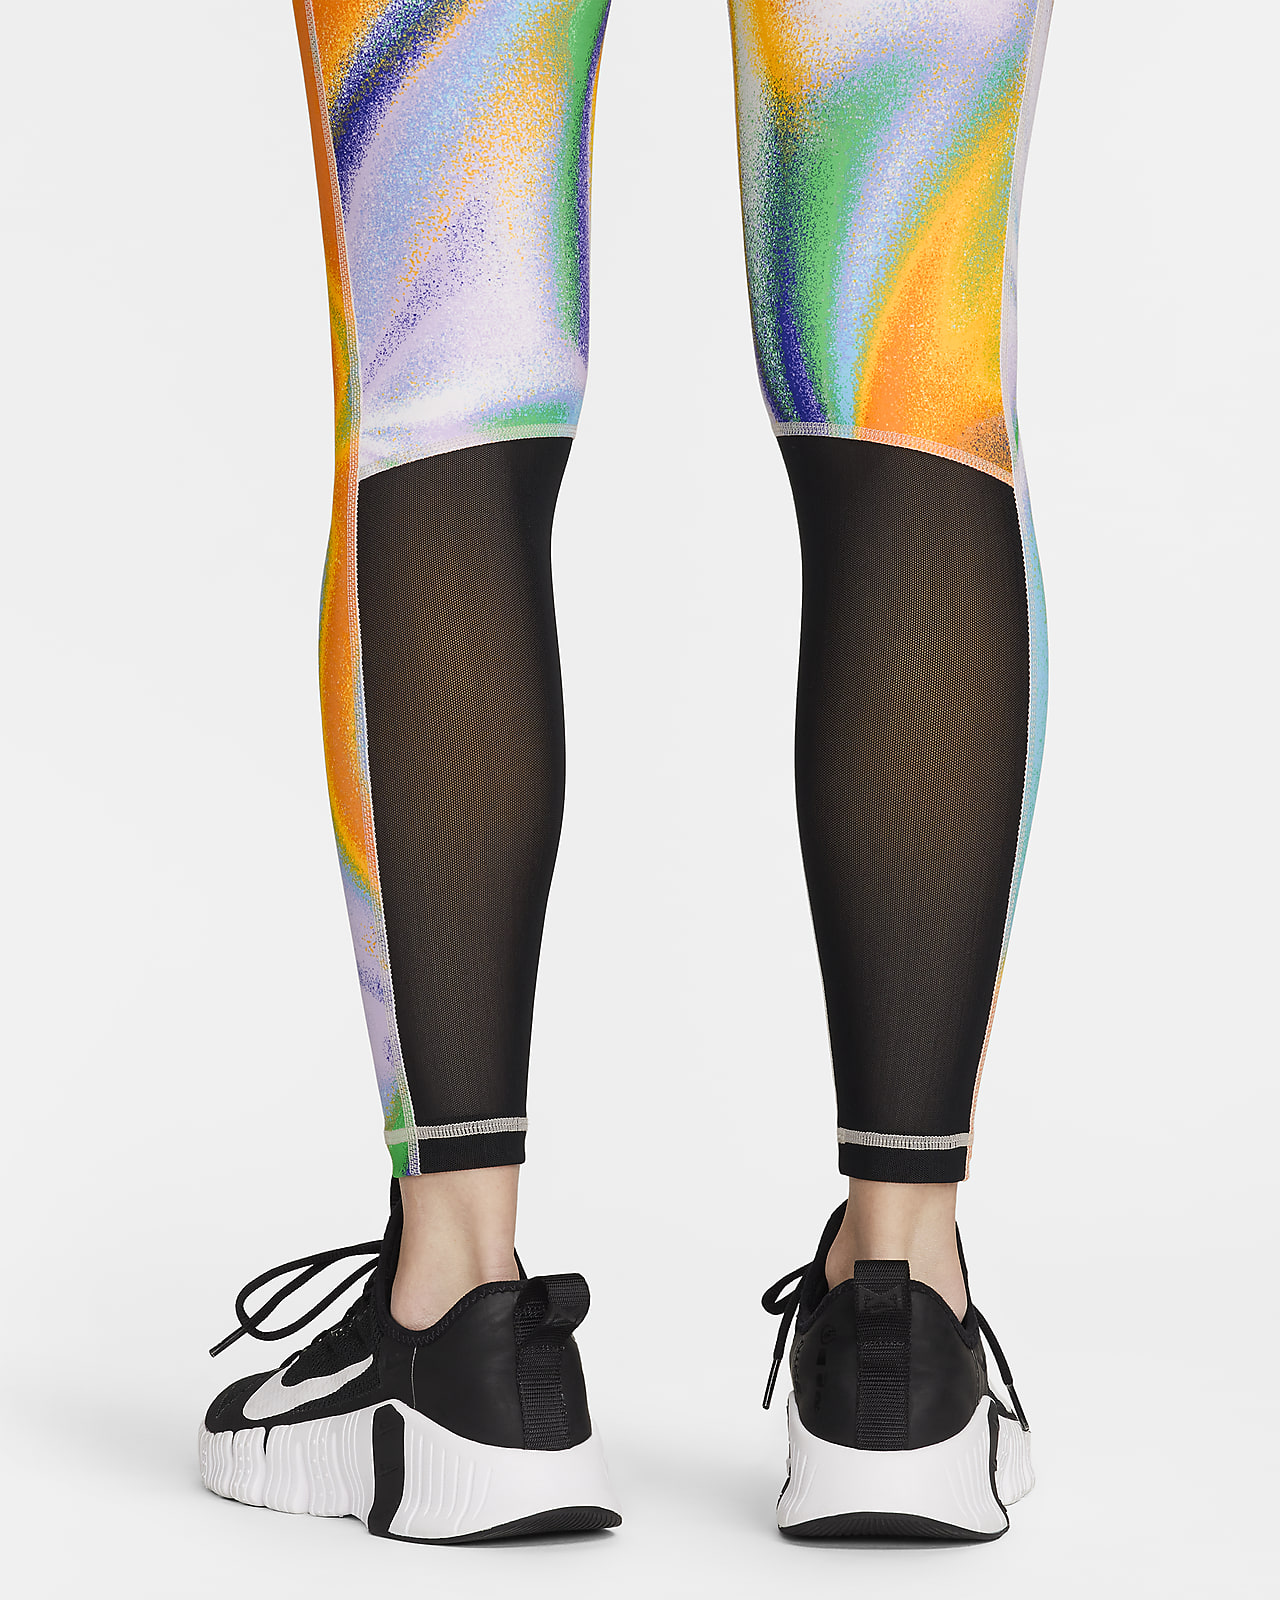 Nike Pro 365 Women's Mid-Rise Mesh-Panelled Leggings